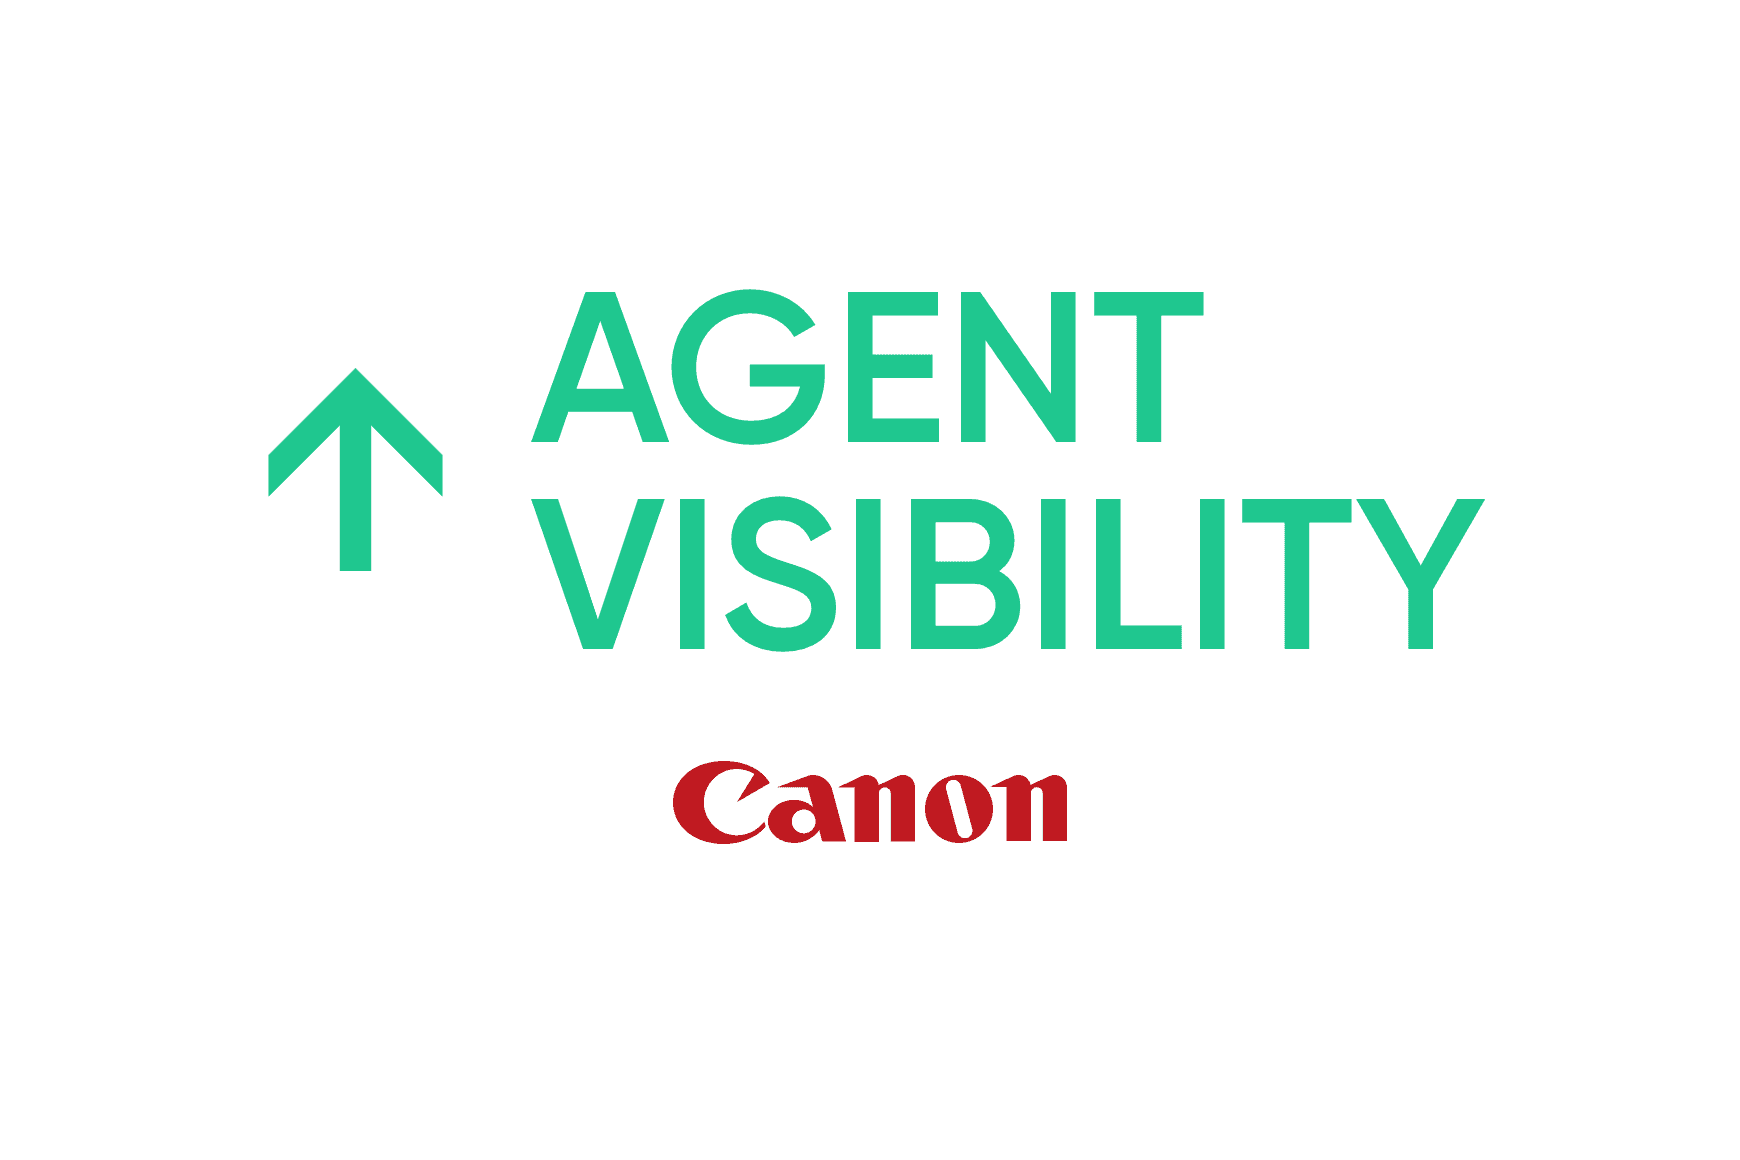 Canon: miglioramento della produttività e della visibilità degli agenti